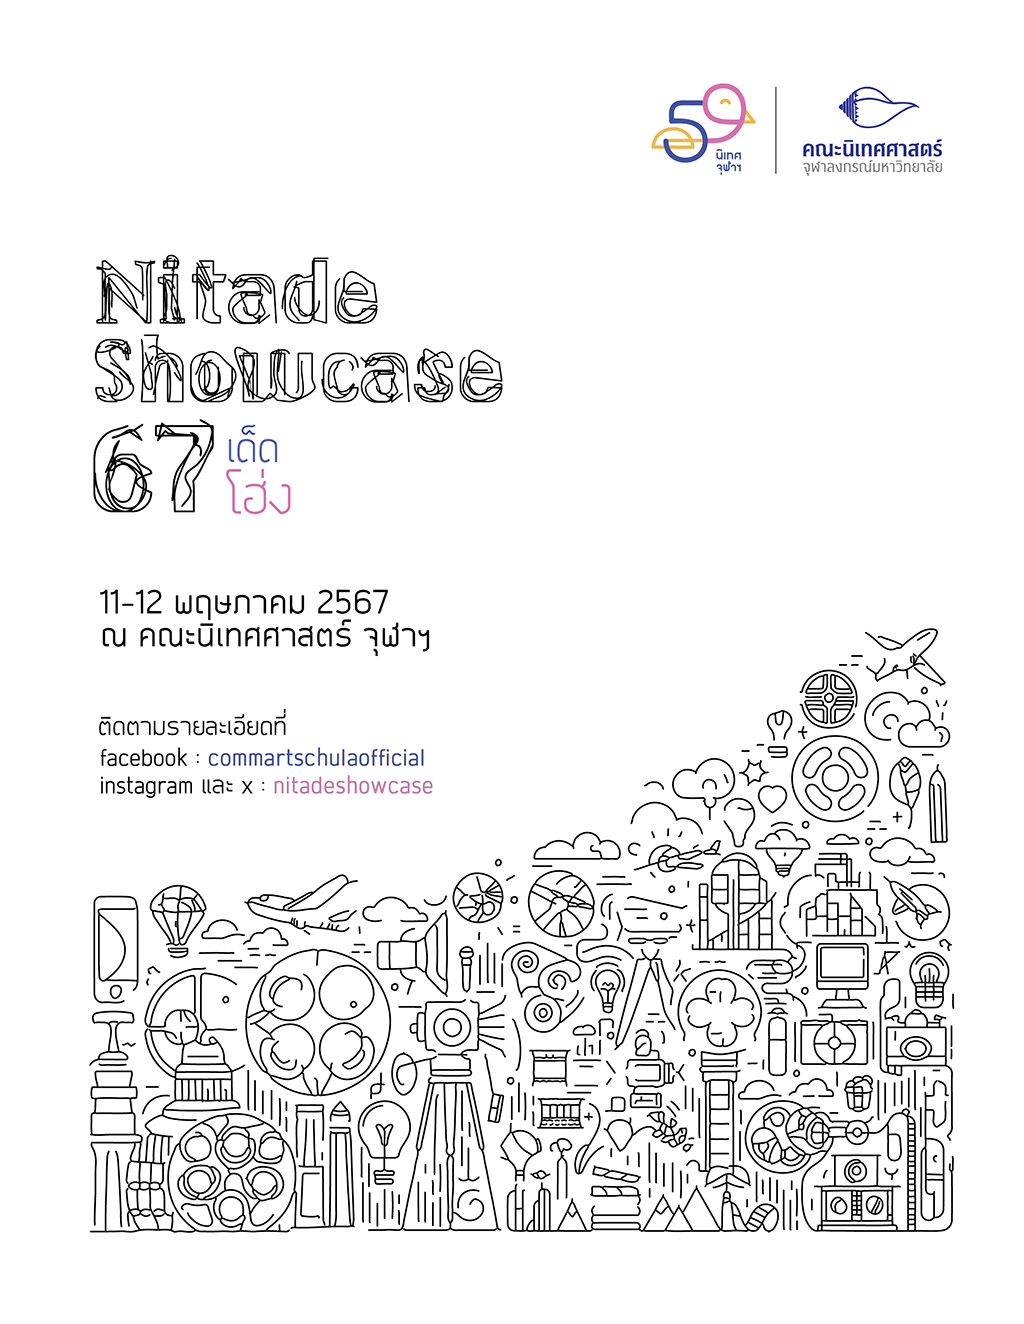 การศึกษา - นิเทศจุฬาฯ เชิญชมนิทรรศการแสดงผลงานของนิสิตประจำปี 2567 Nitade Showcase 67 เด็ดโฮ่ง 11-12 พฤษภาคม 2567